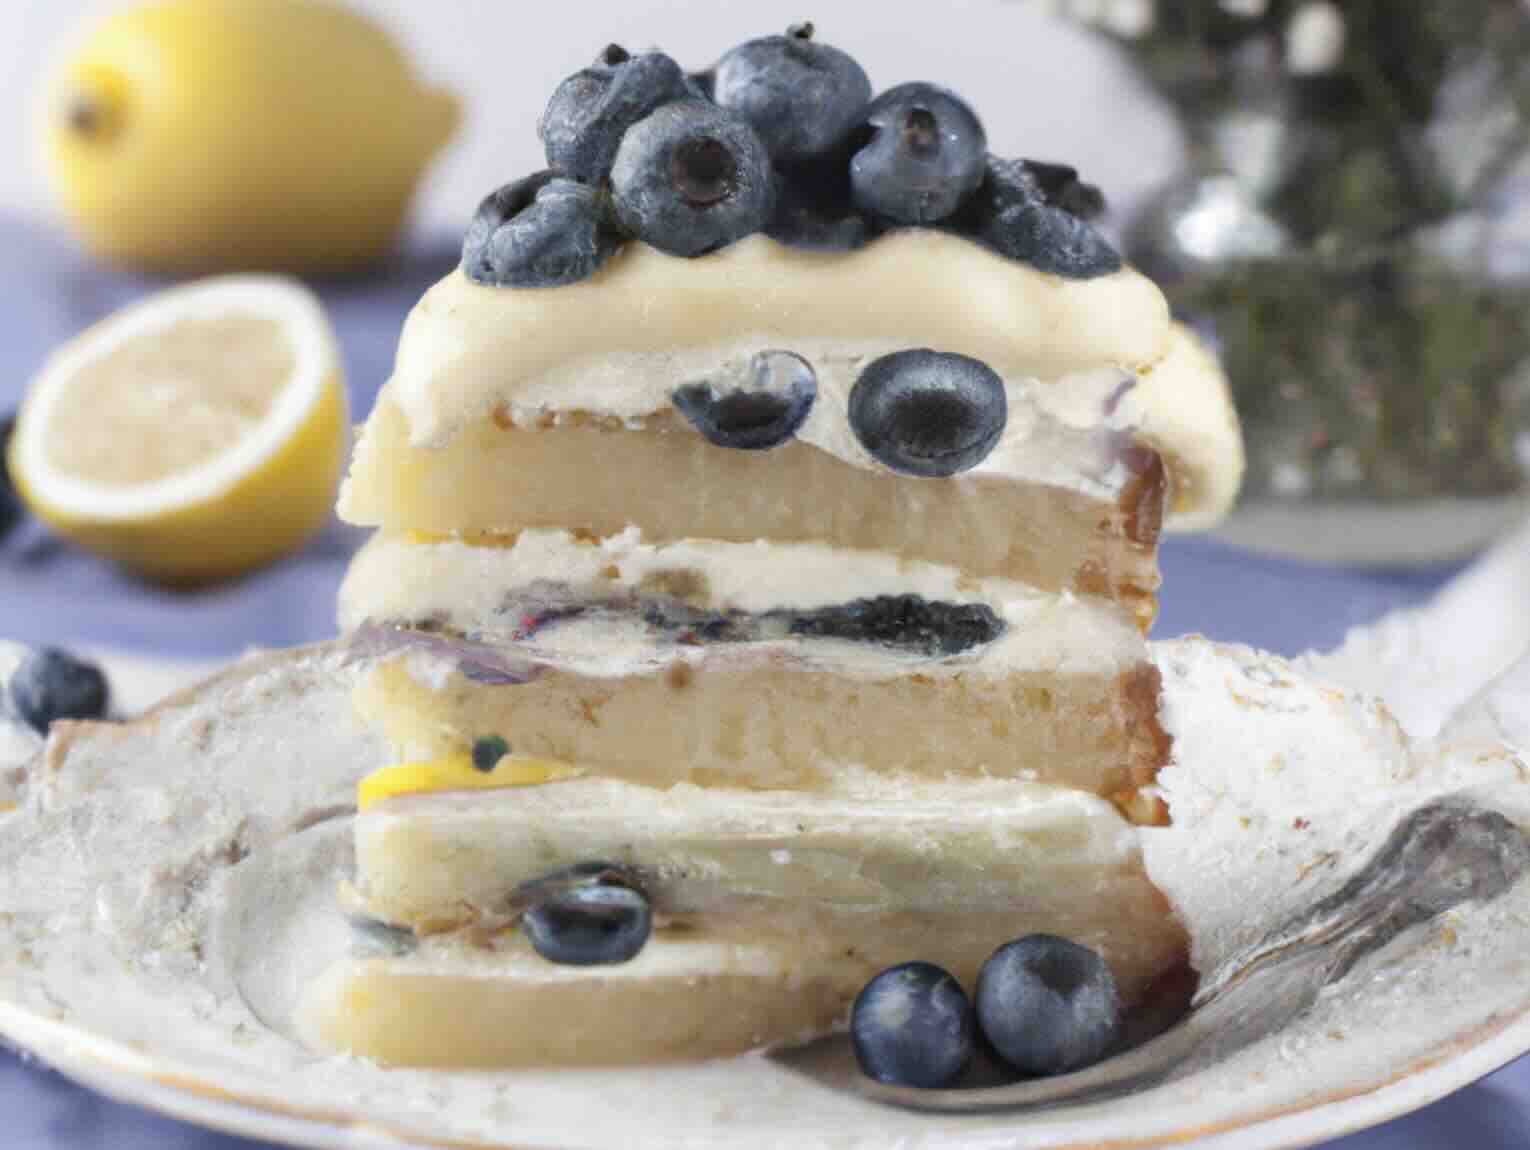 Lemon-Blueberry Torte